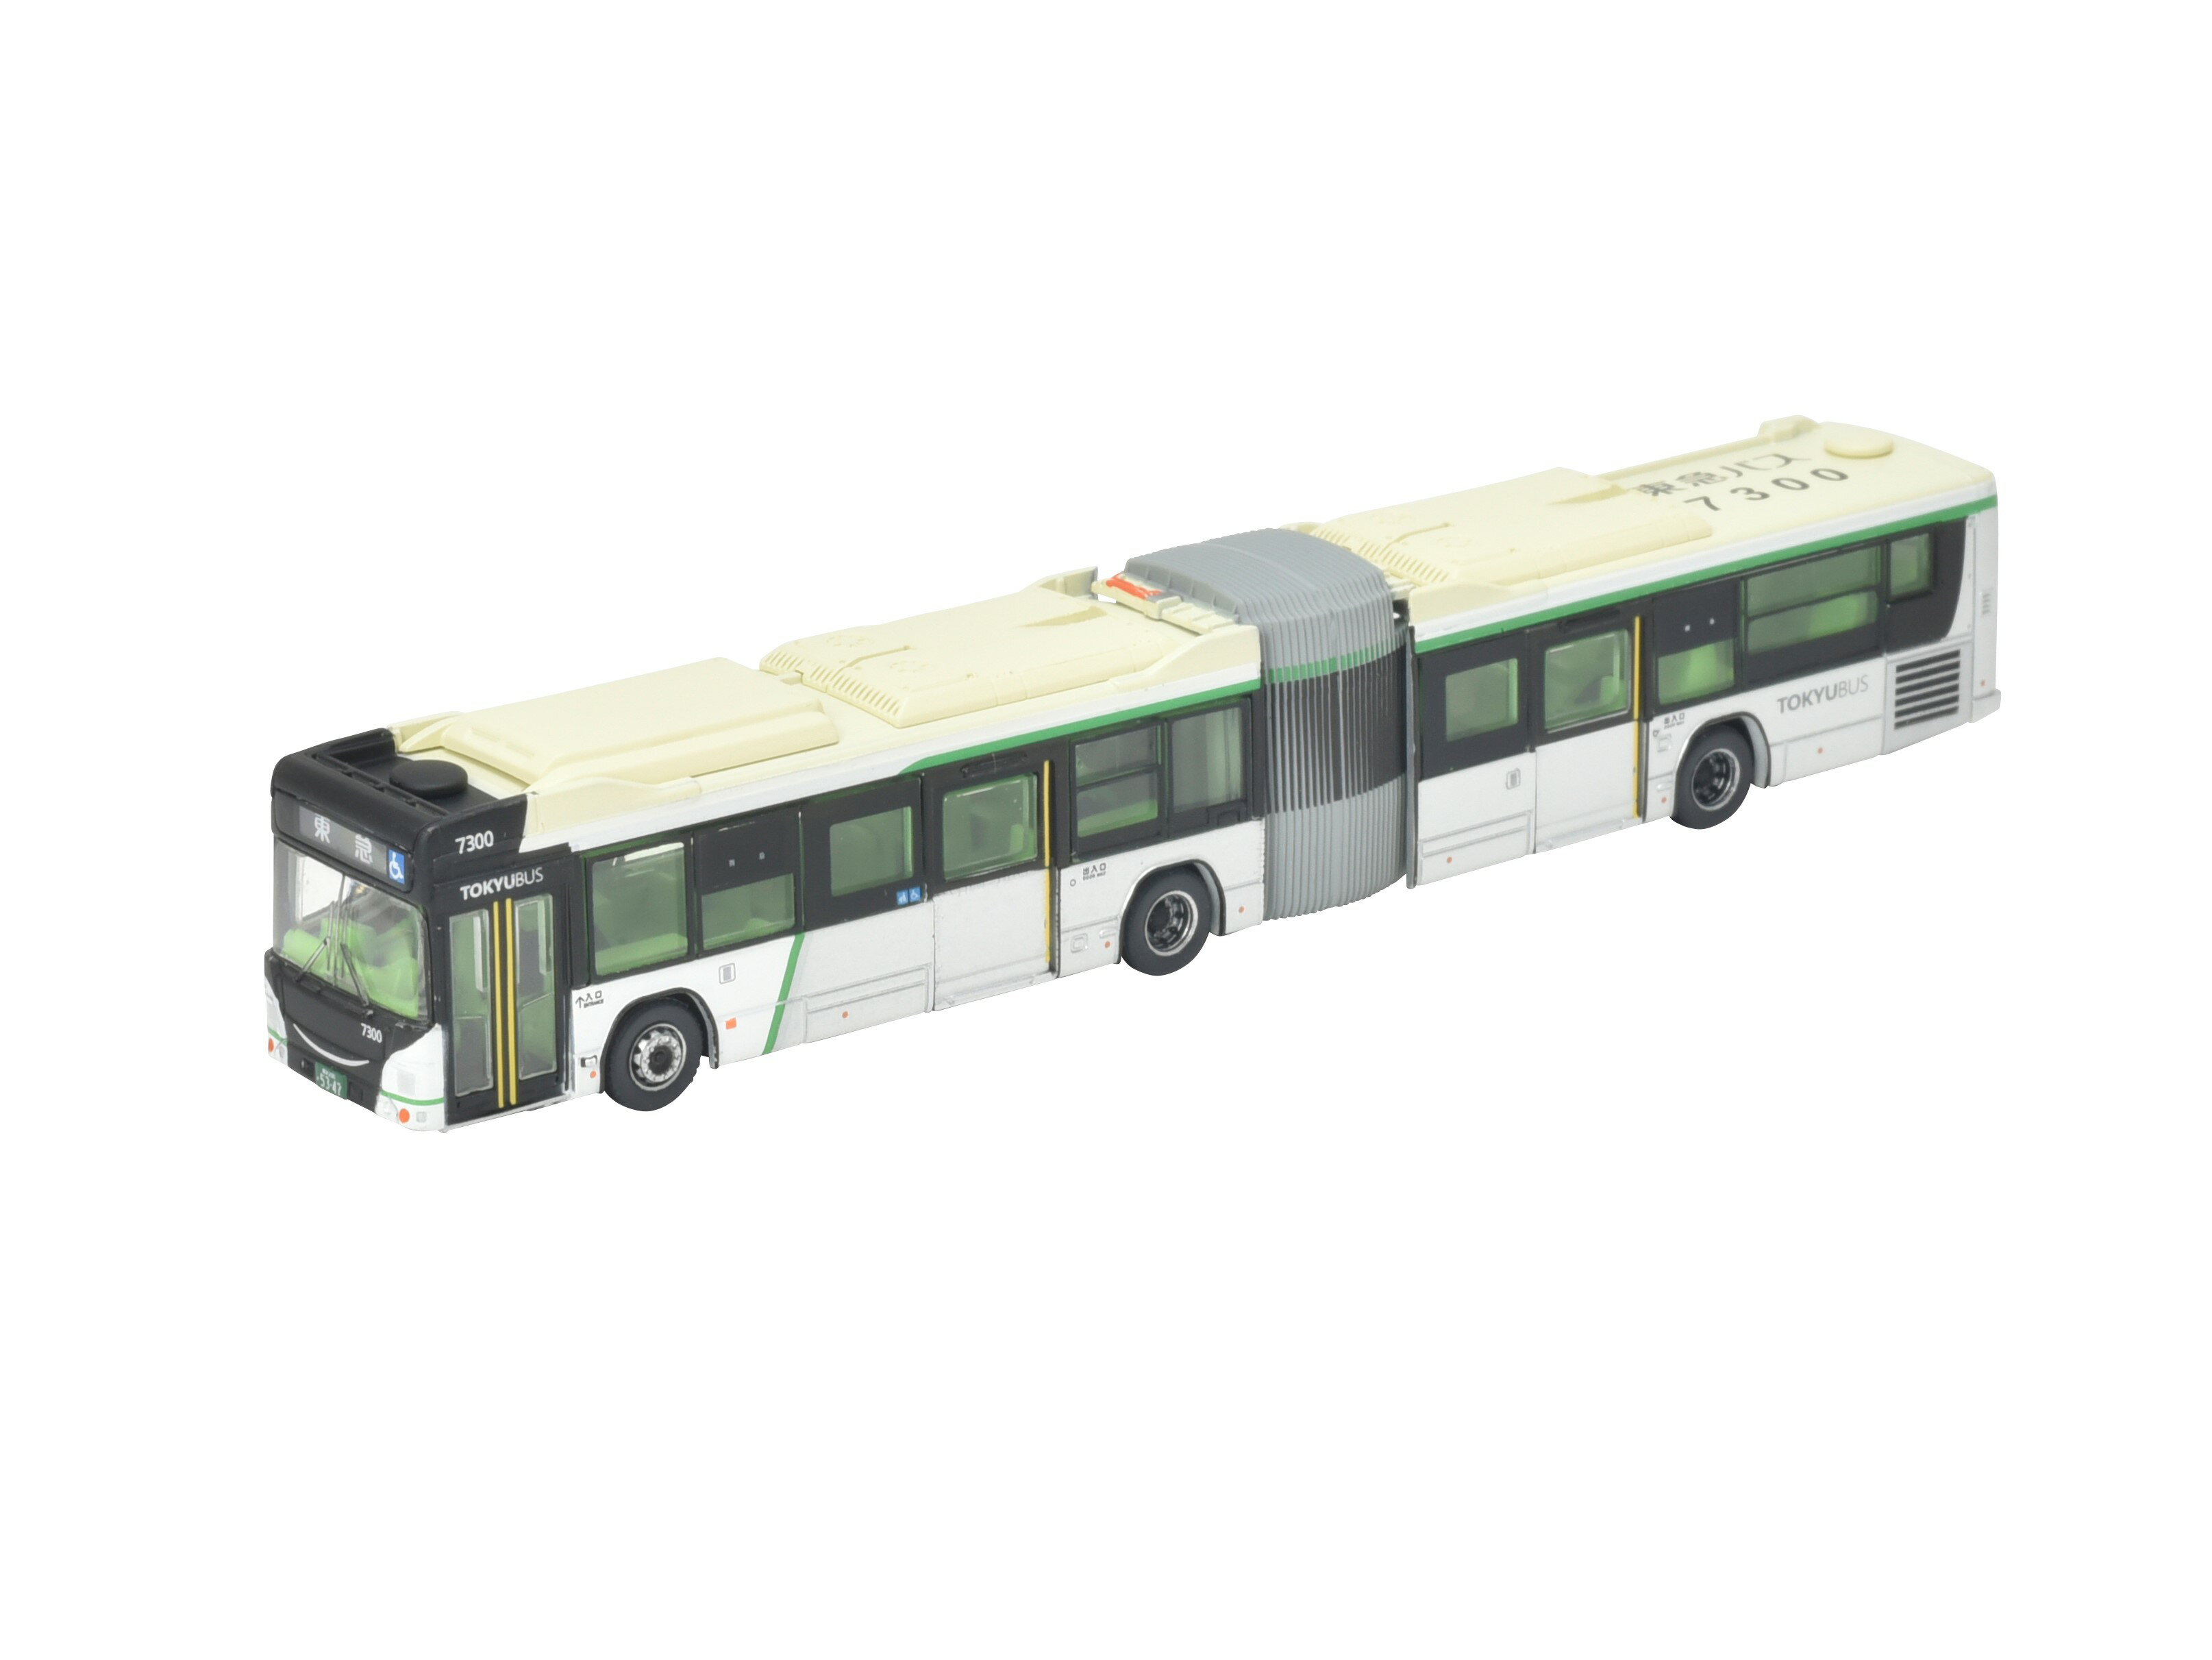 ［鉄道模型］トミーテック (N) ザ・バスコレクション 東急バス連節バス